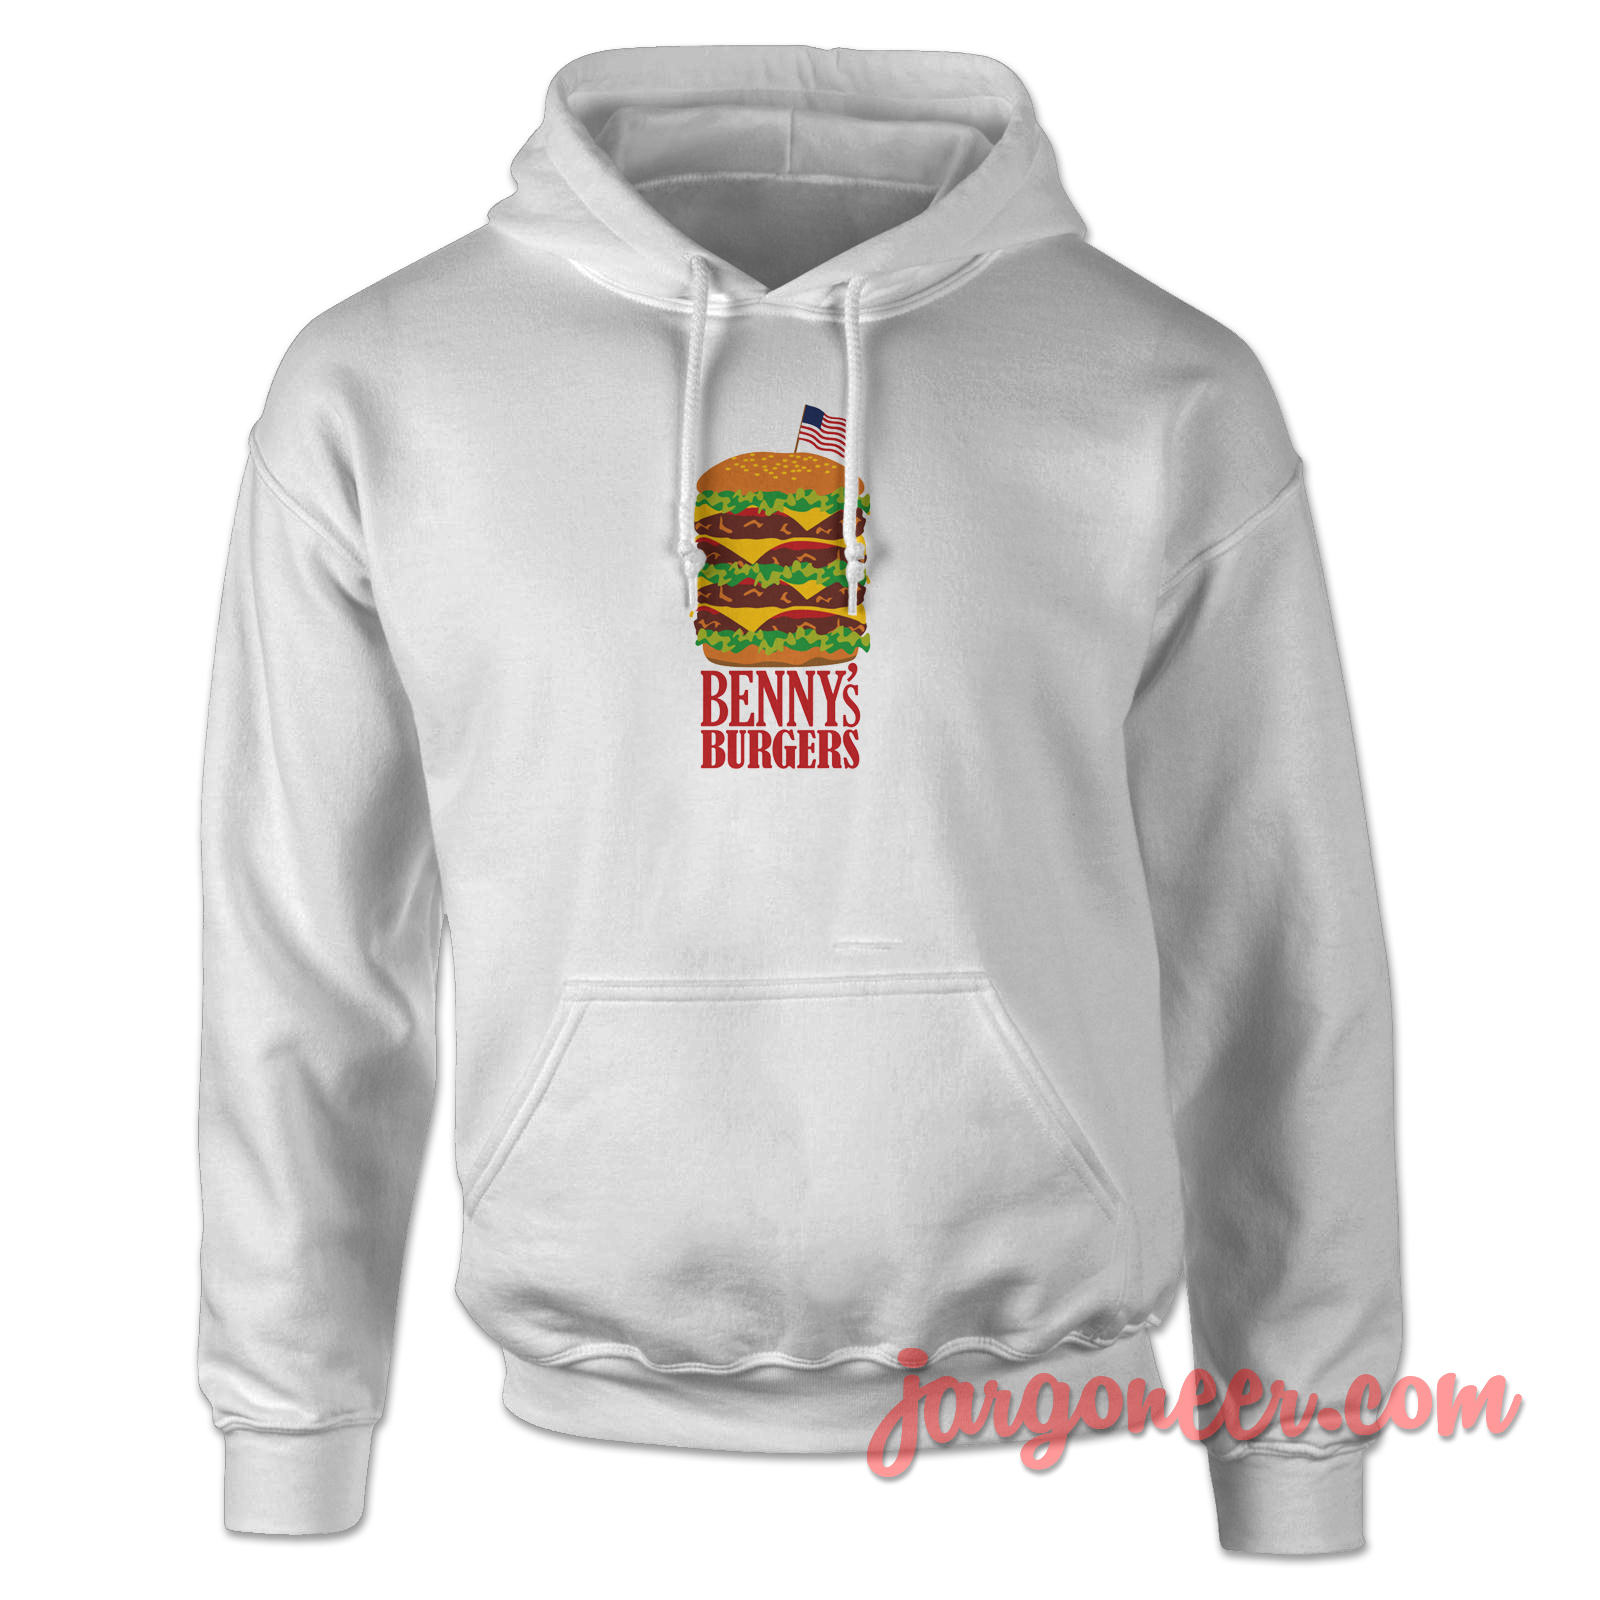 Bennys Burger Stranger Things 2 - Shop Unique Graphic Cool Shirt Designs